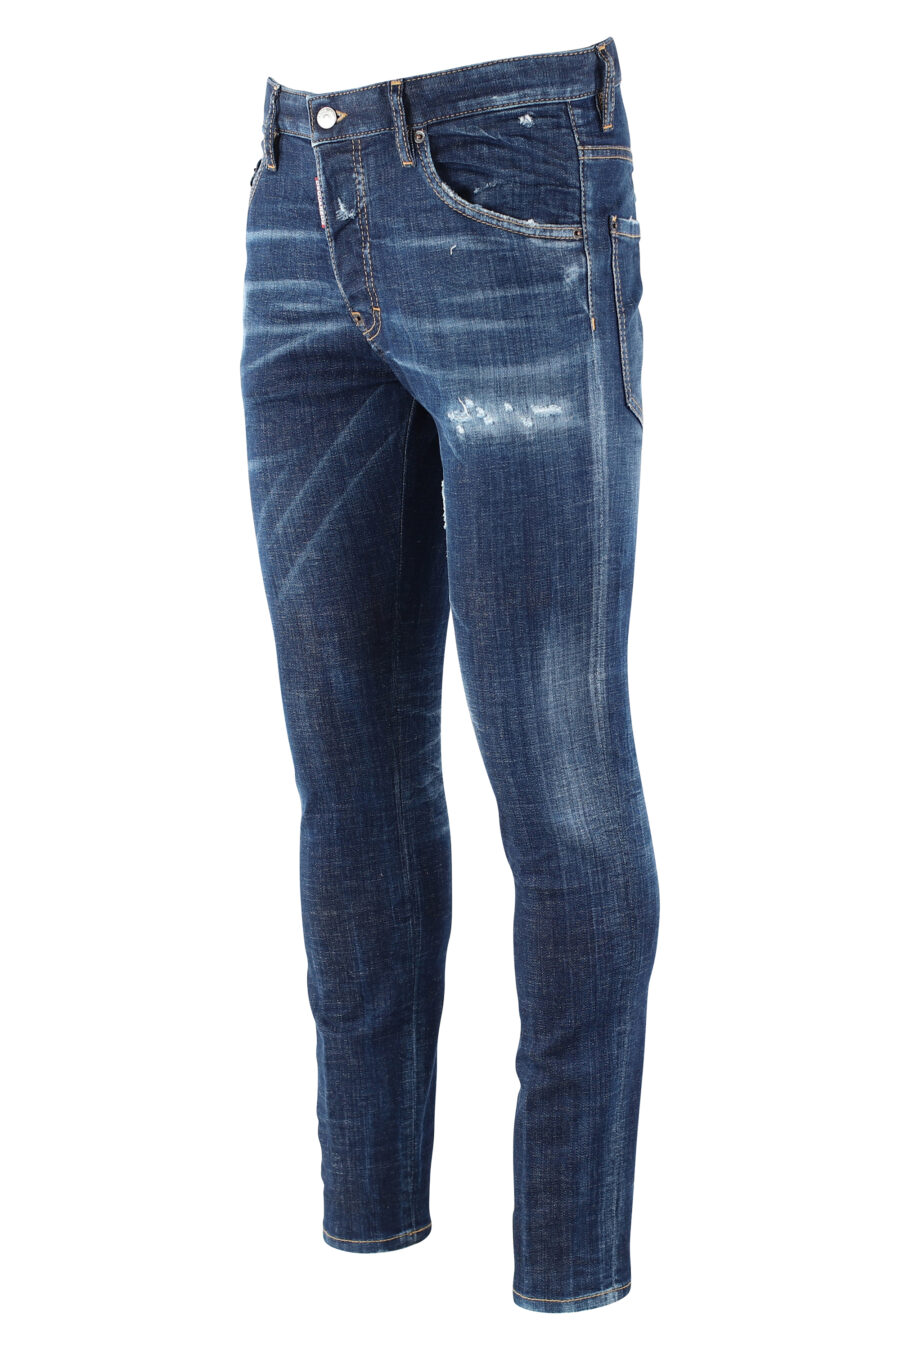 Pantalón vaquero "icon skater jean" azul oscuro semidesgastado - IMG 9655 1